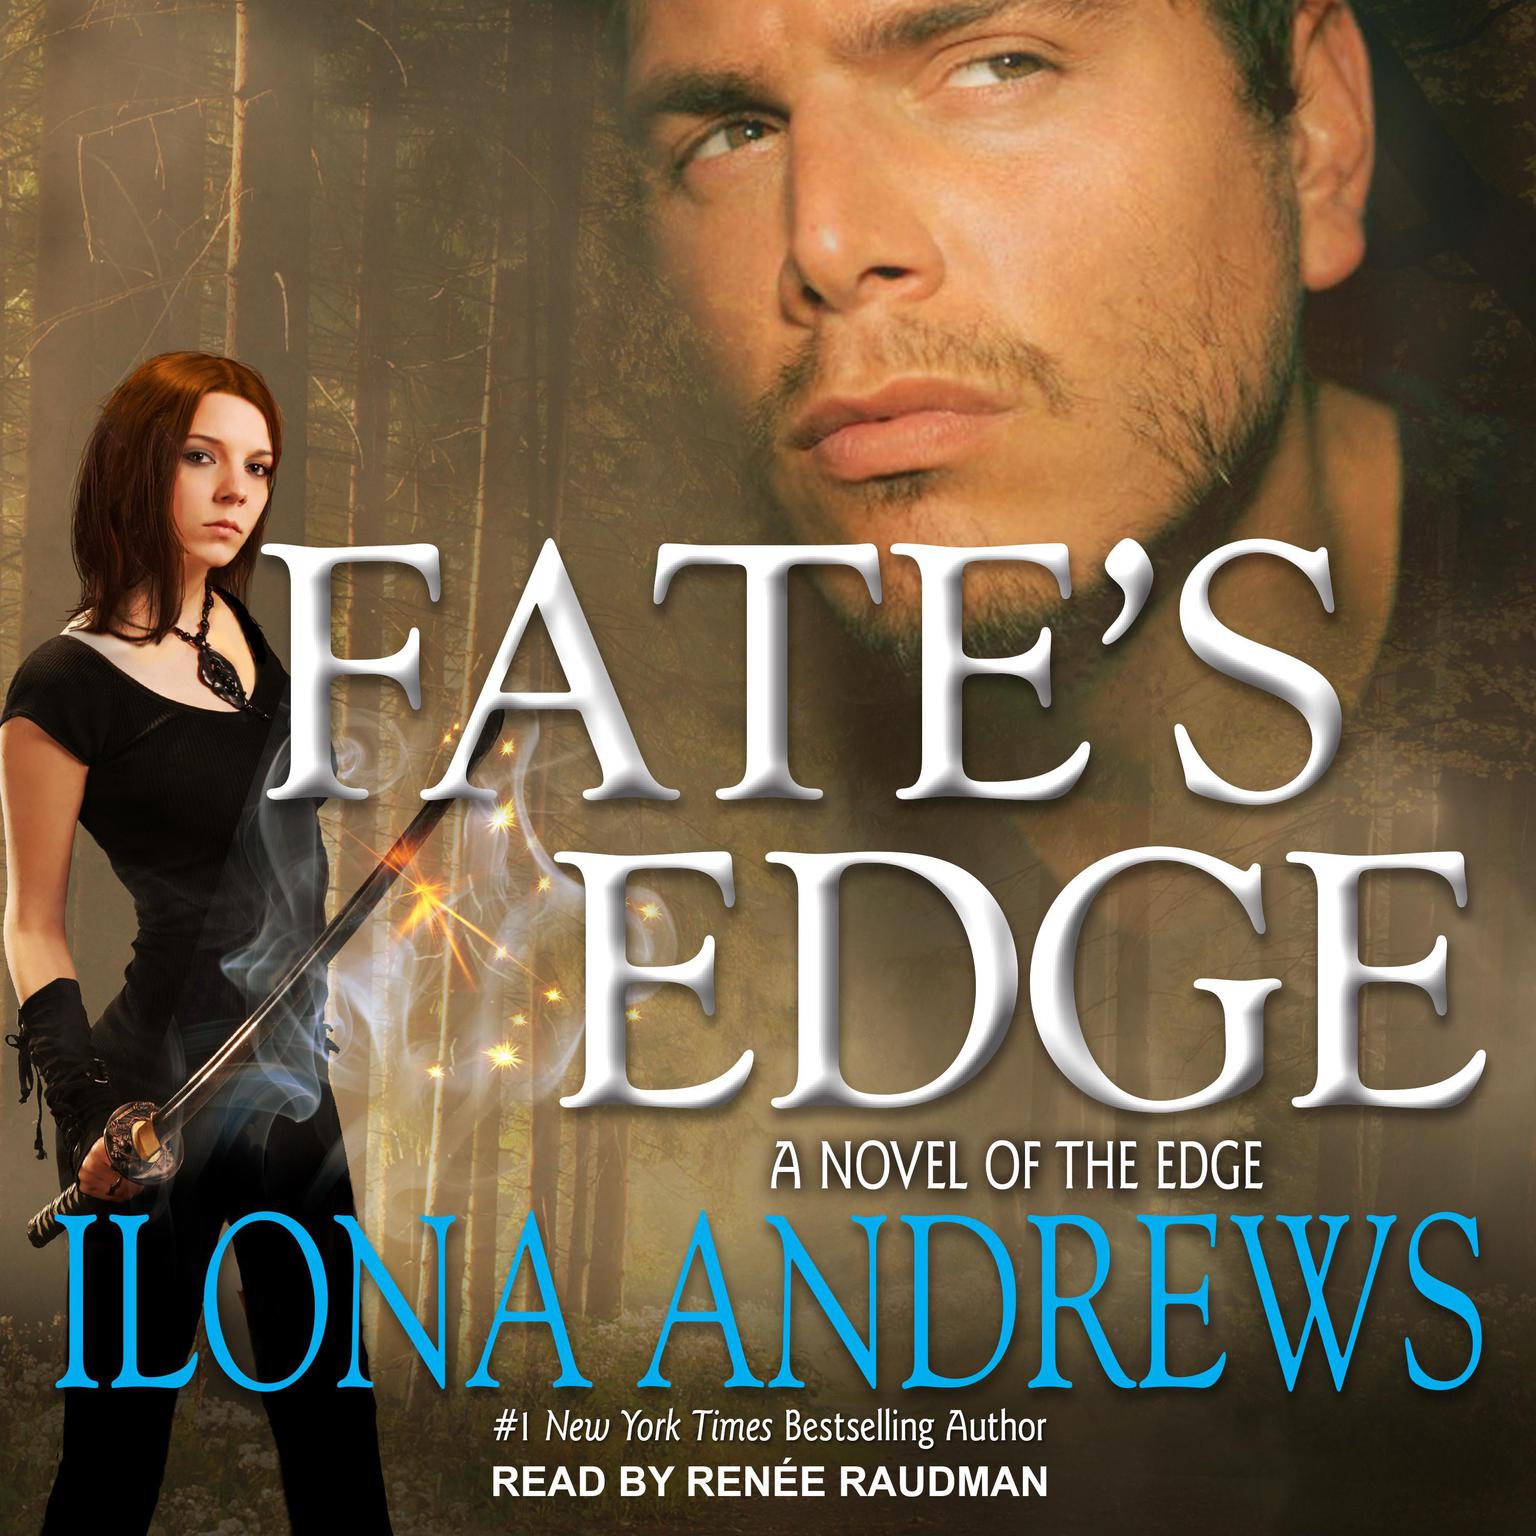 Fates Edge Audiobook, by Ilona Andrews